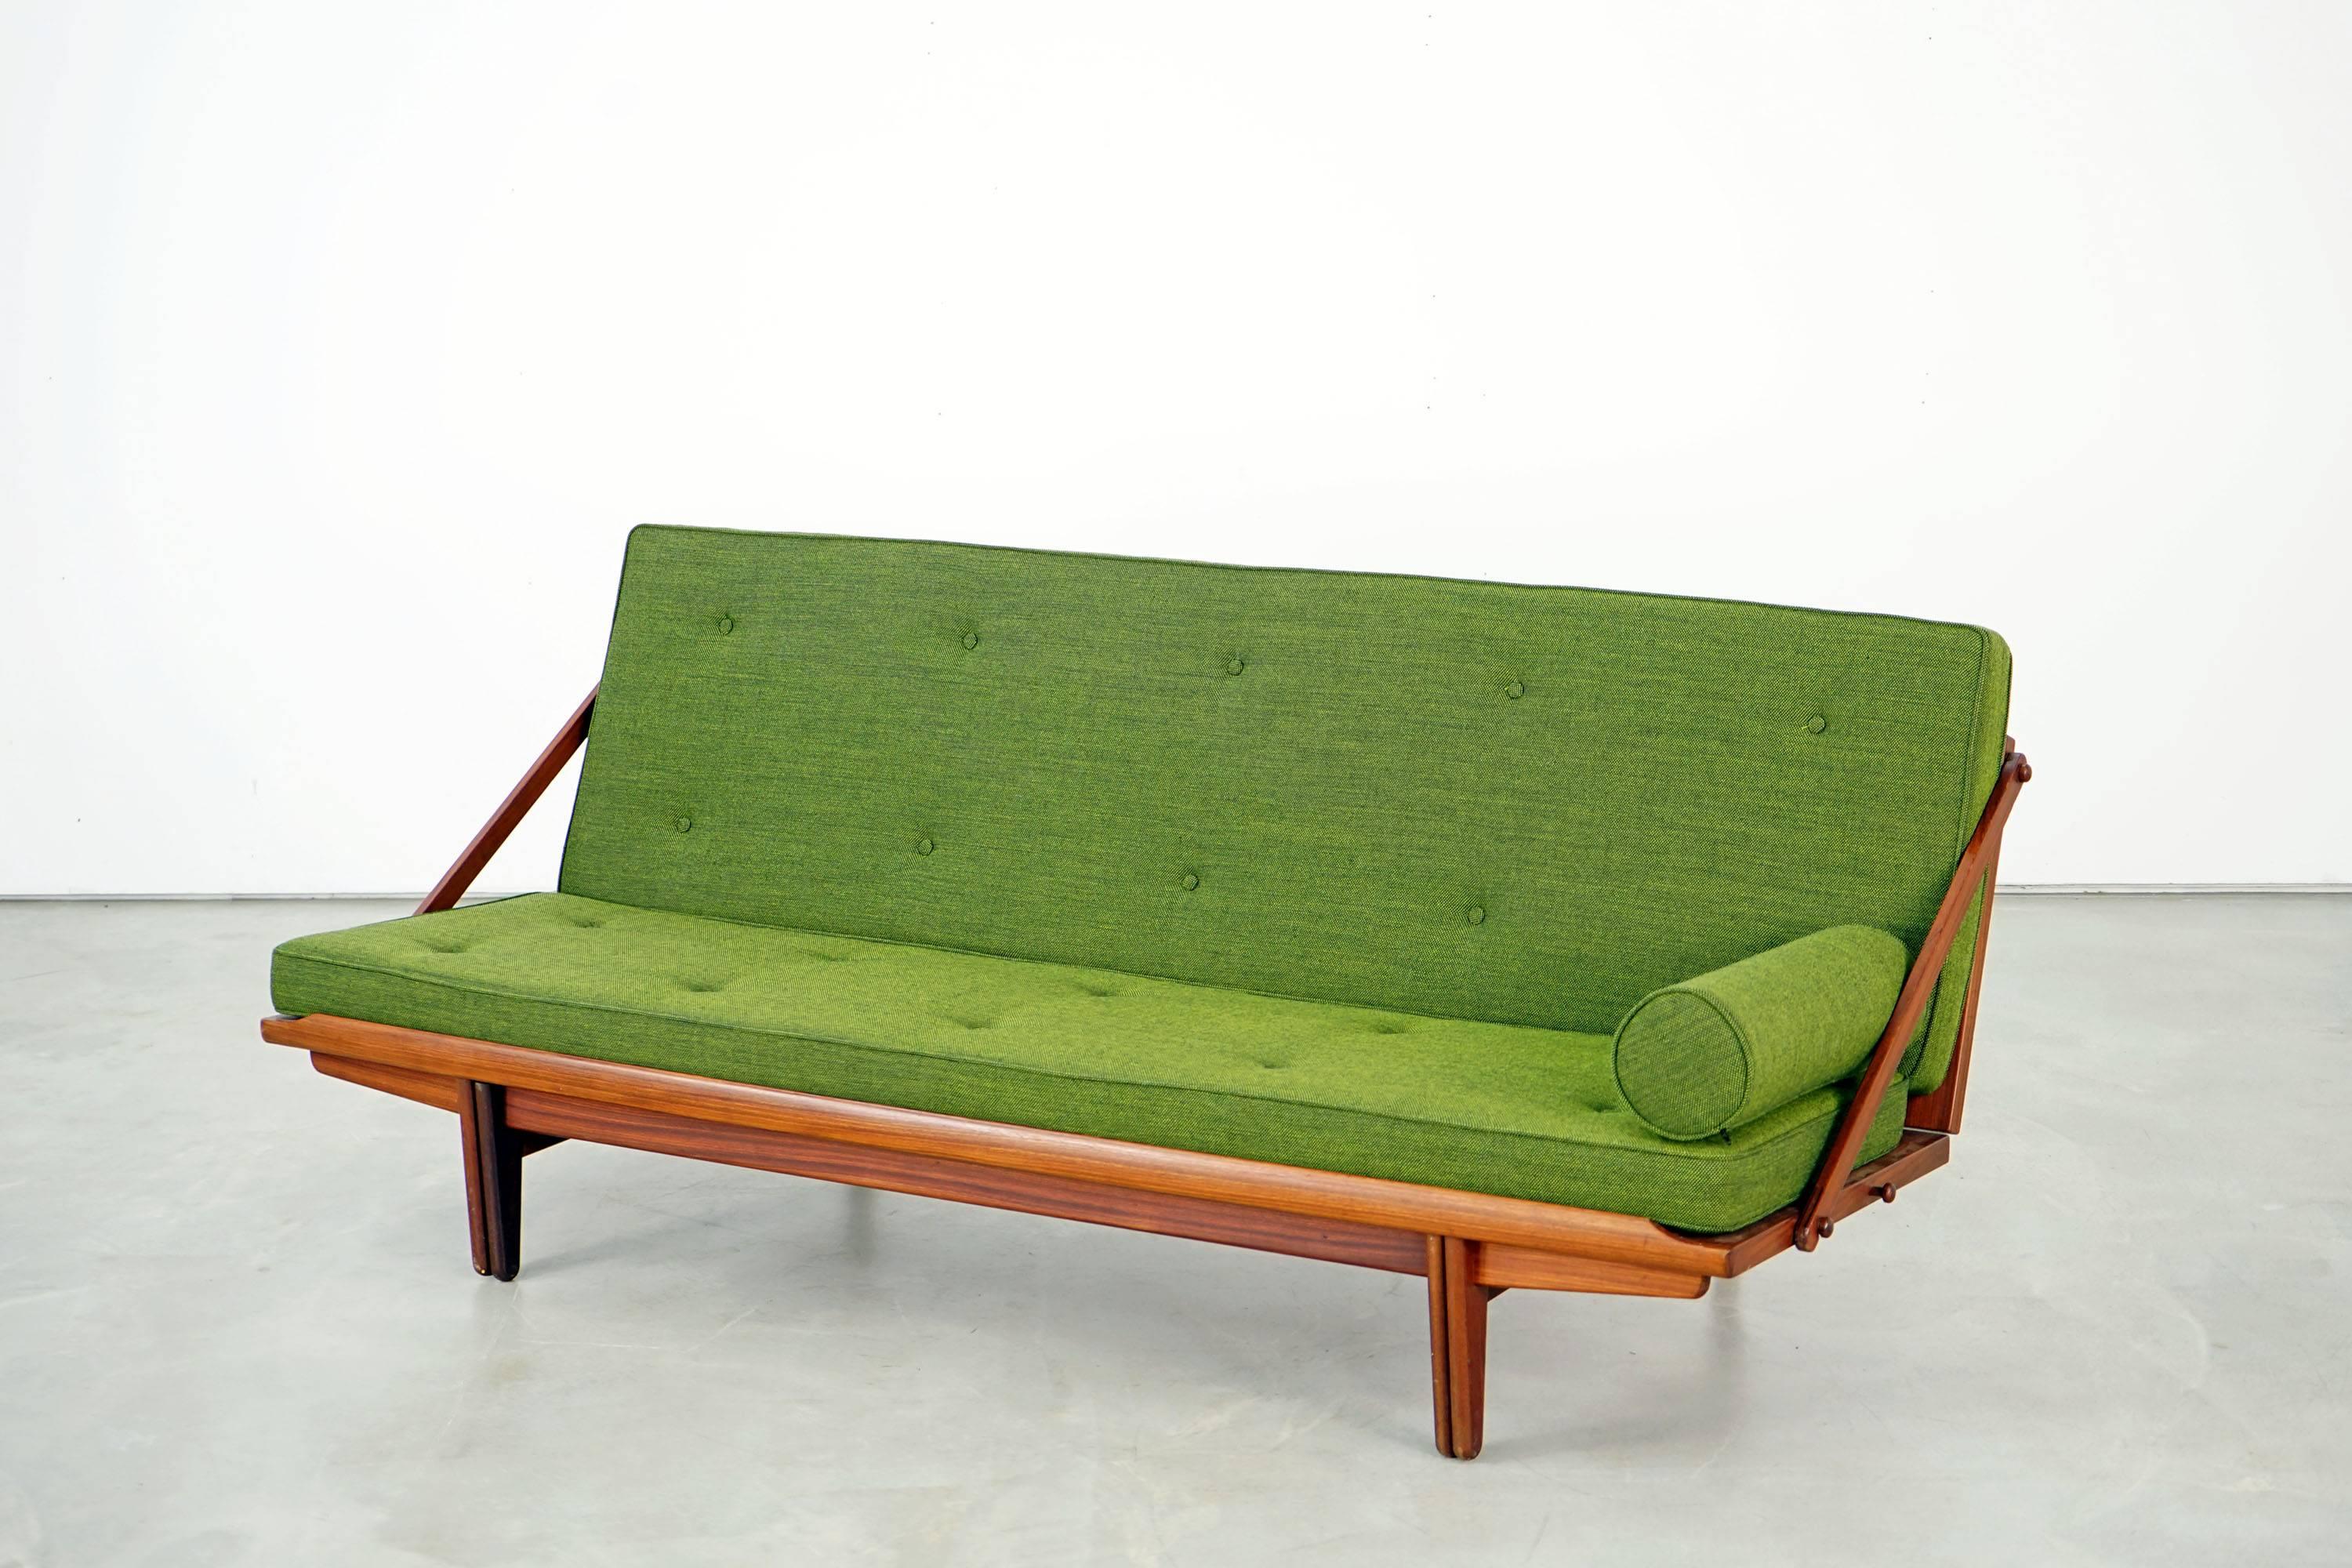 Das Daybed wurde in den 1950er Jahren von Poul M. Volther für Frem Røjle entworfen und verbindet Eleganz und Funktionalität, da es sich leicht aufklappen lässt. Das Teakholzgestell ist in sehr gutem Zustand, die Kissen wurden gepolstert und mit